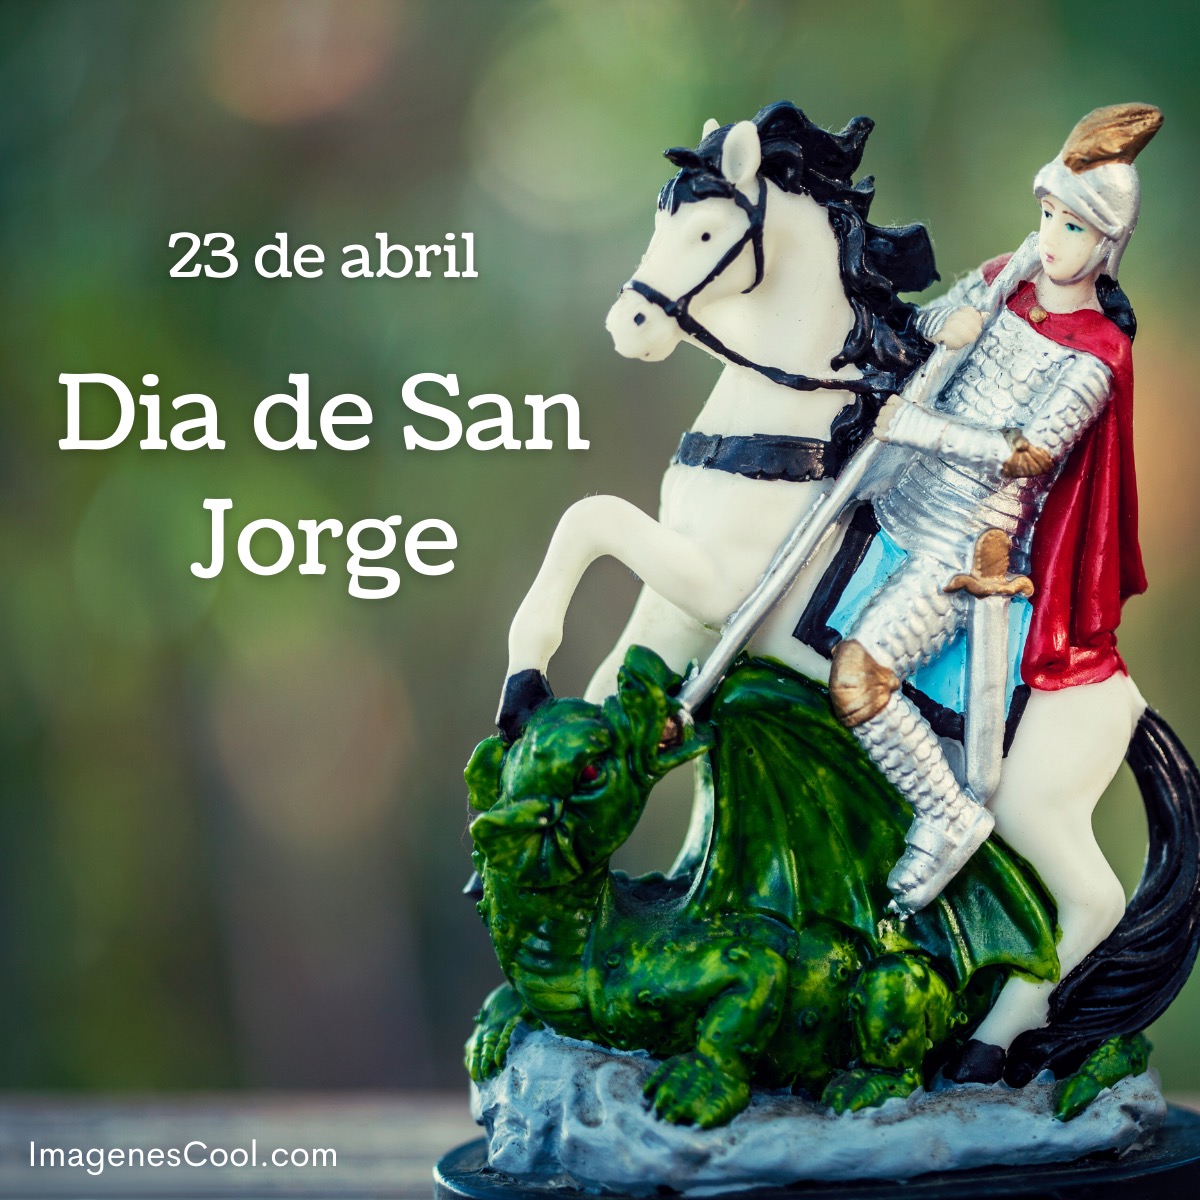 Figura de San Jorge a caballo venciendo un dragón, con texto celebrando su día el 23 de abril